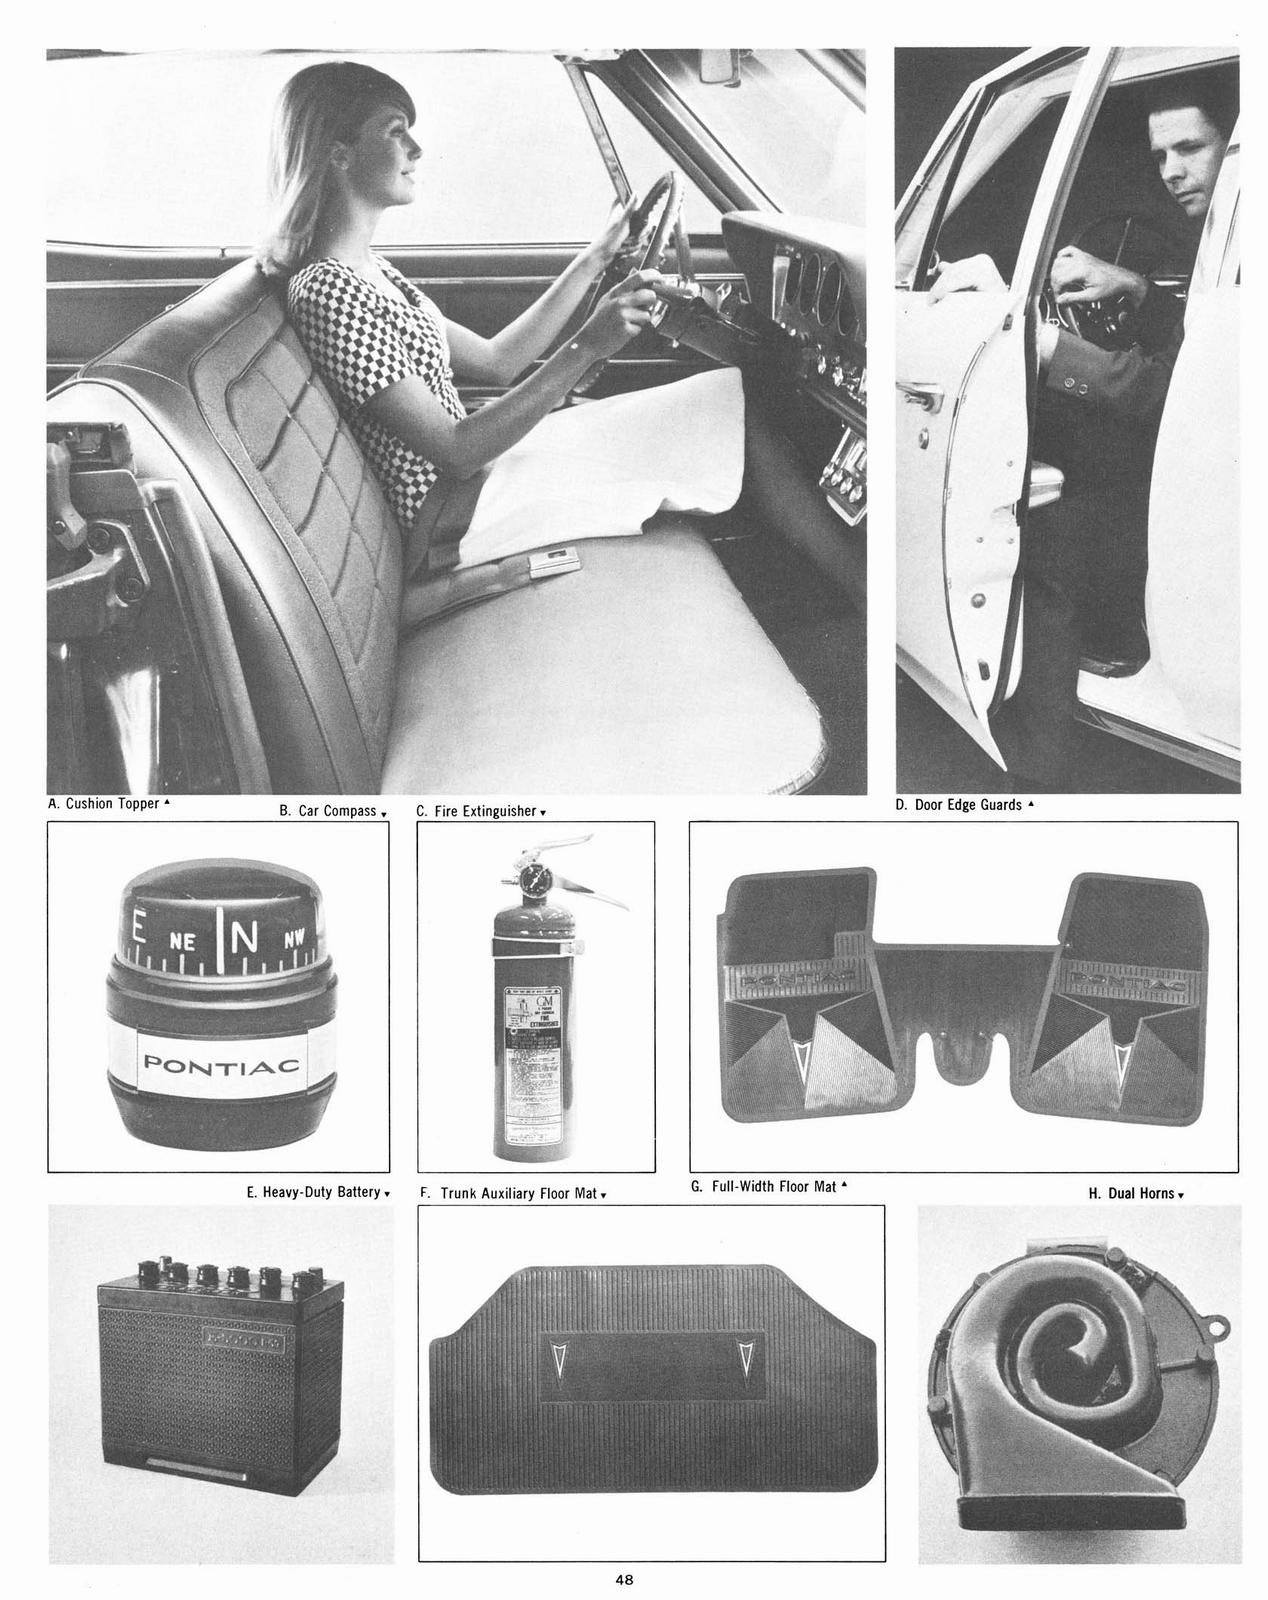 n_1967 Pontiac Accessories-48.jpg